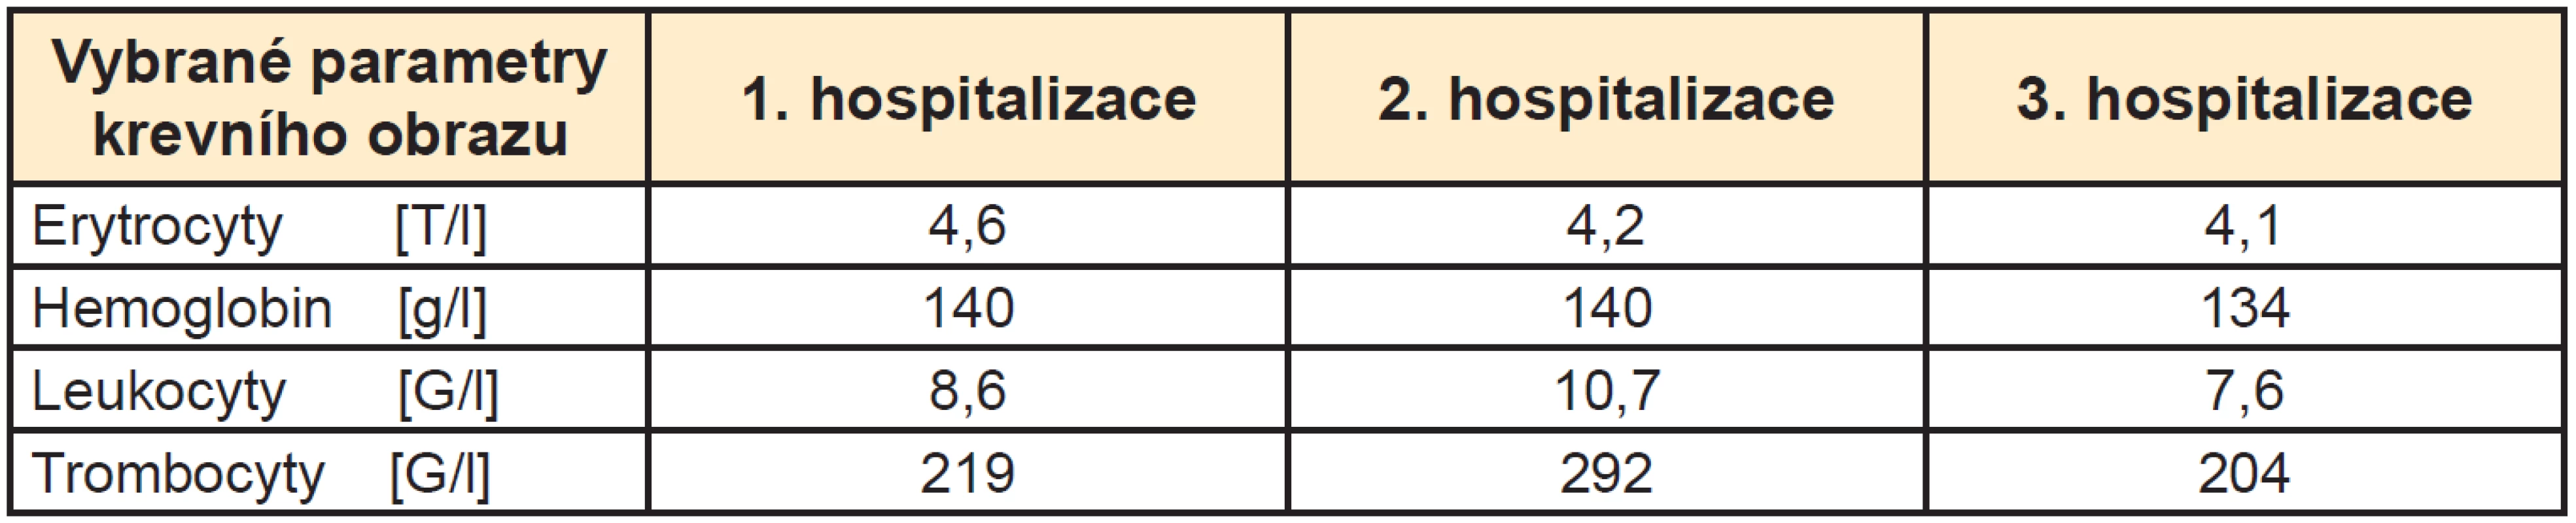 Porovnání vybraných parametrů krevního obrazu z 1., 2. a 3. hospitalizace